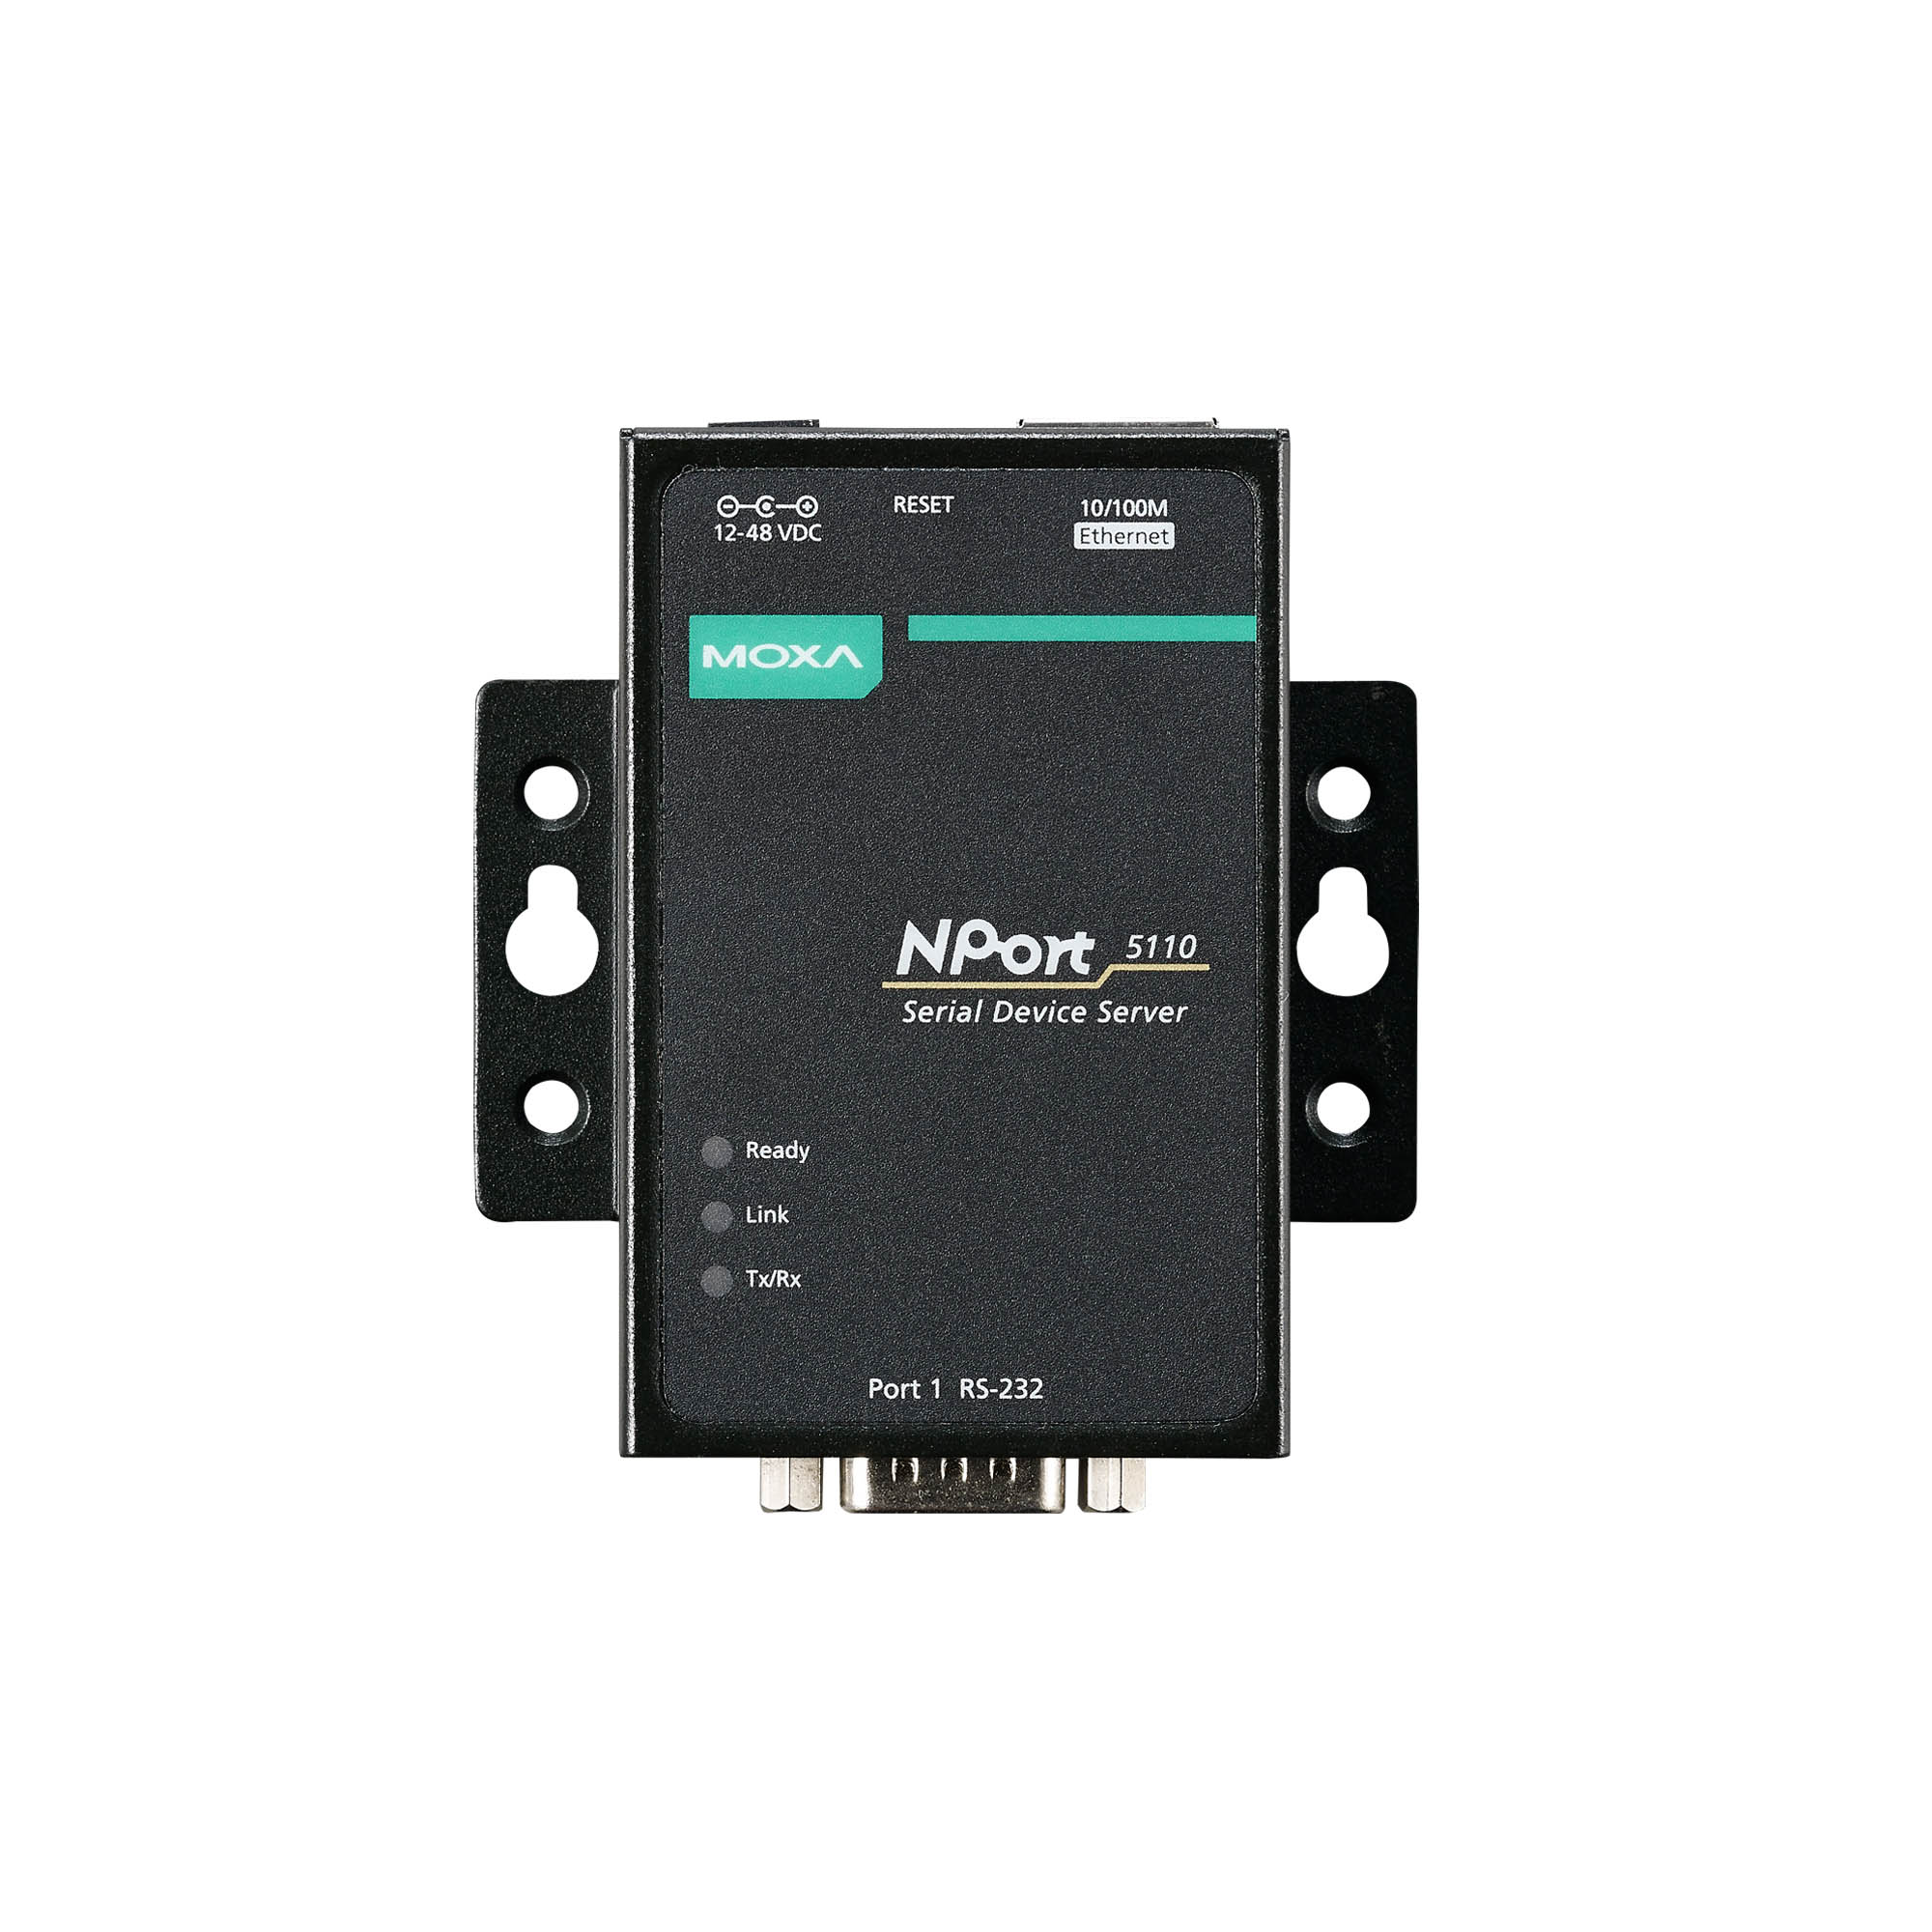 MOXA Serial Device Server NPort 5110 RS232 RJ45 Ethernet NPort5110 